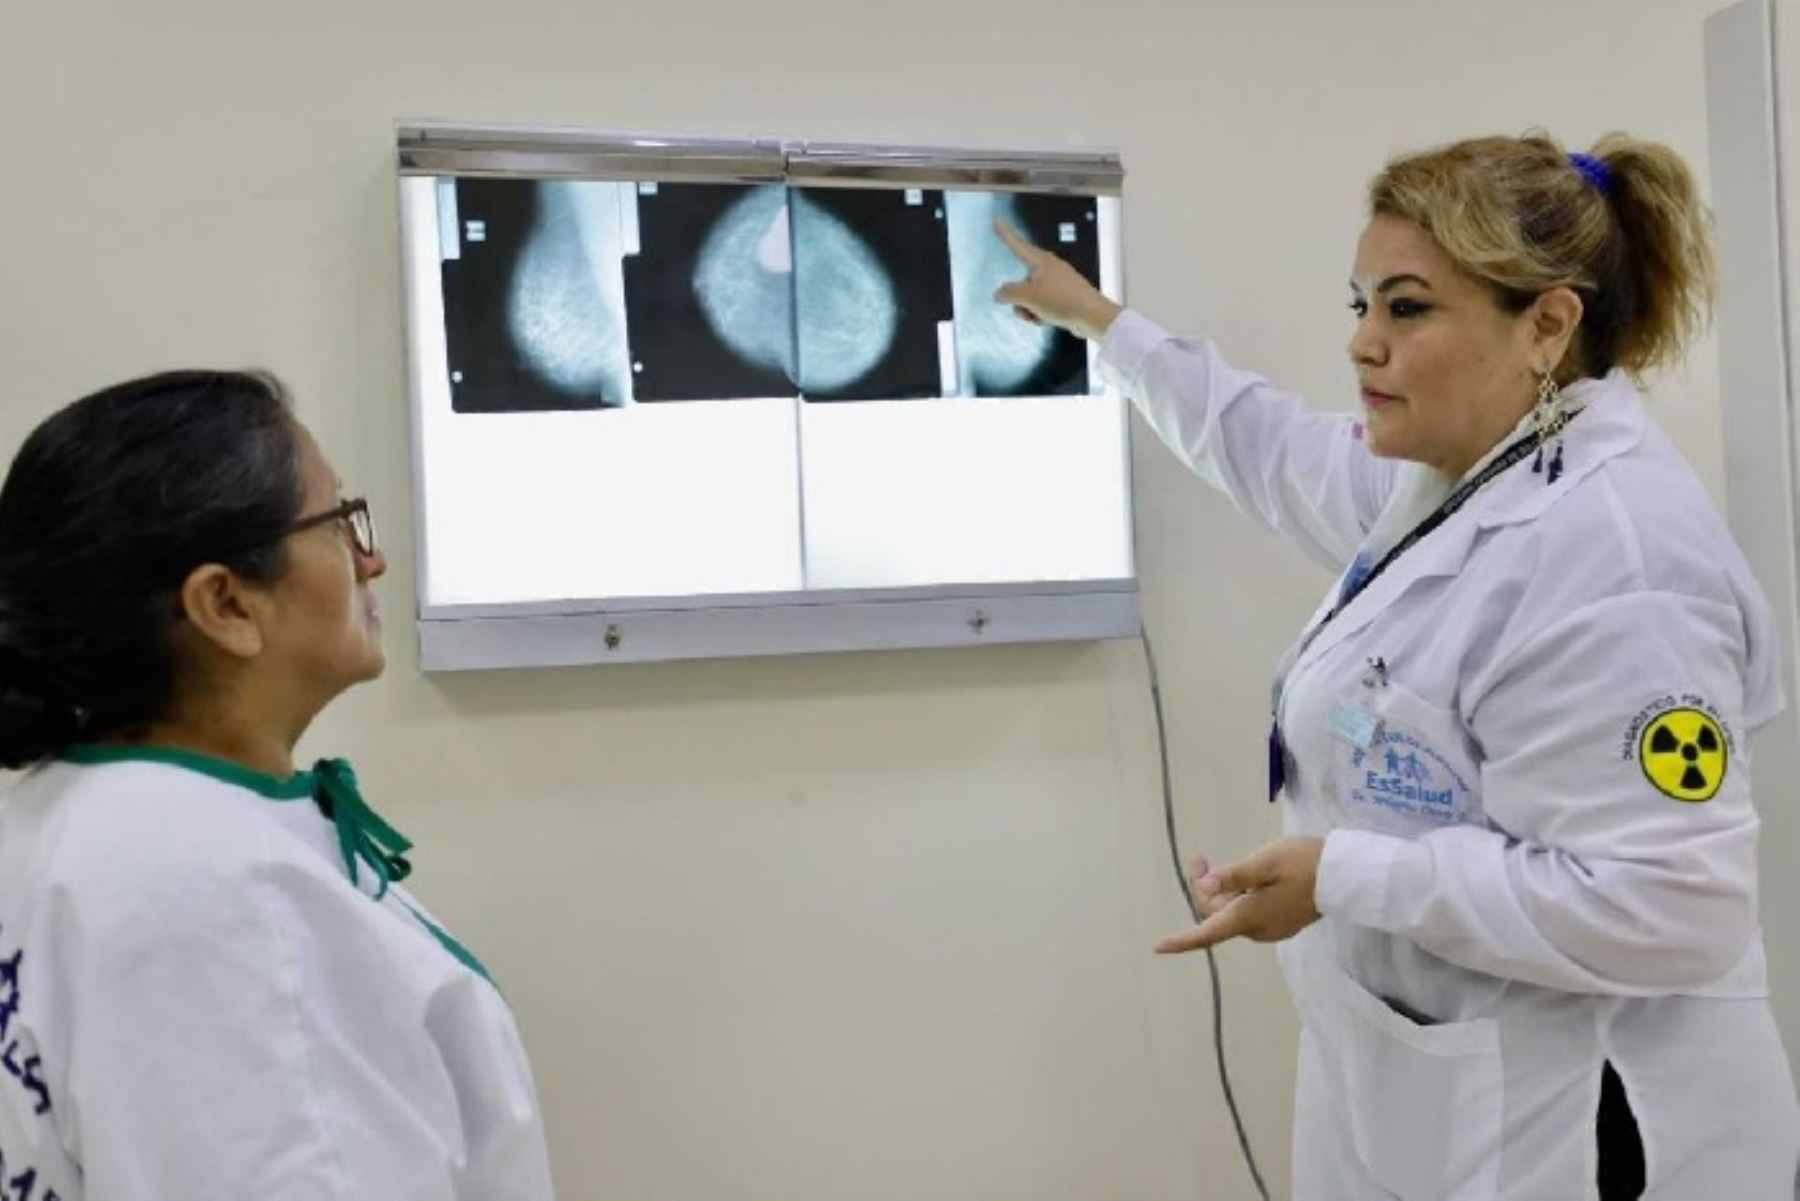 Una técnica para la detección precoz de cáncer de mama, aplican especialistas de la Red Asistencial Cusco del Seguro Social de Salud (EsSalud), lo que permite dar un tratamiento oportuno a las pacientes que padecen esta enfermedad, el más frecuente diagnosticado en mujeres.